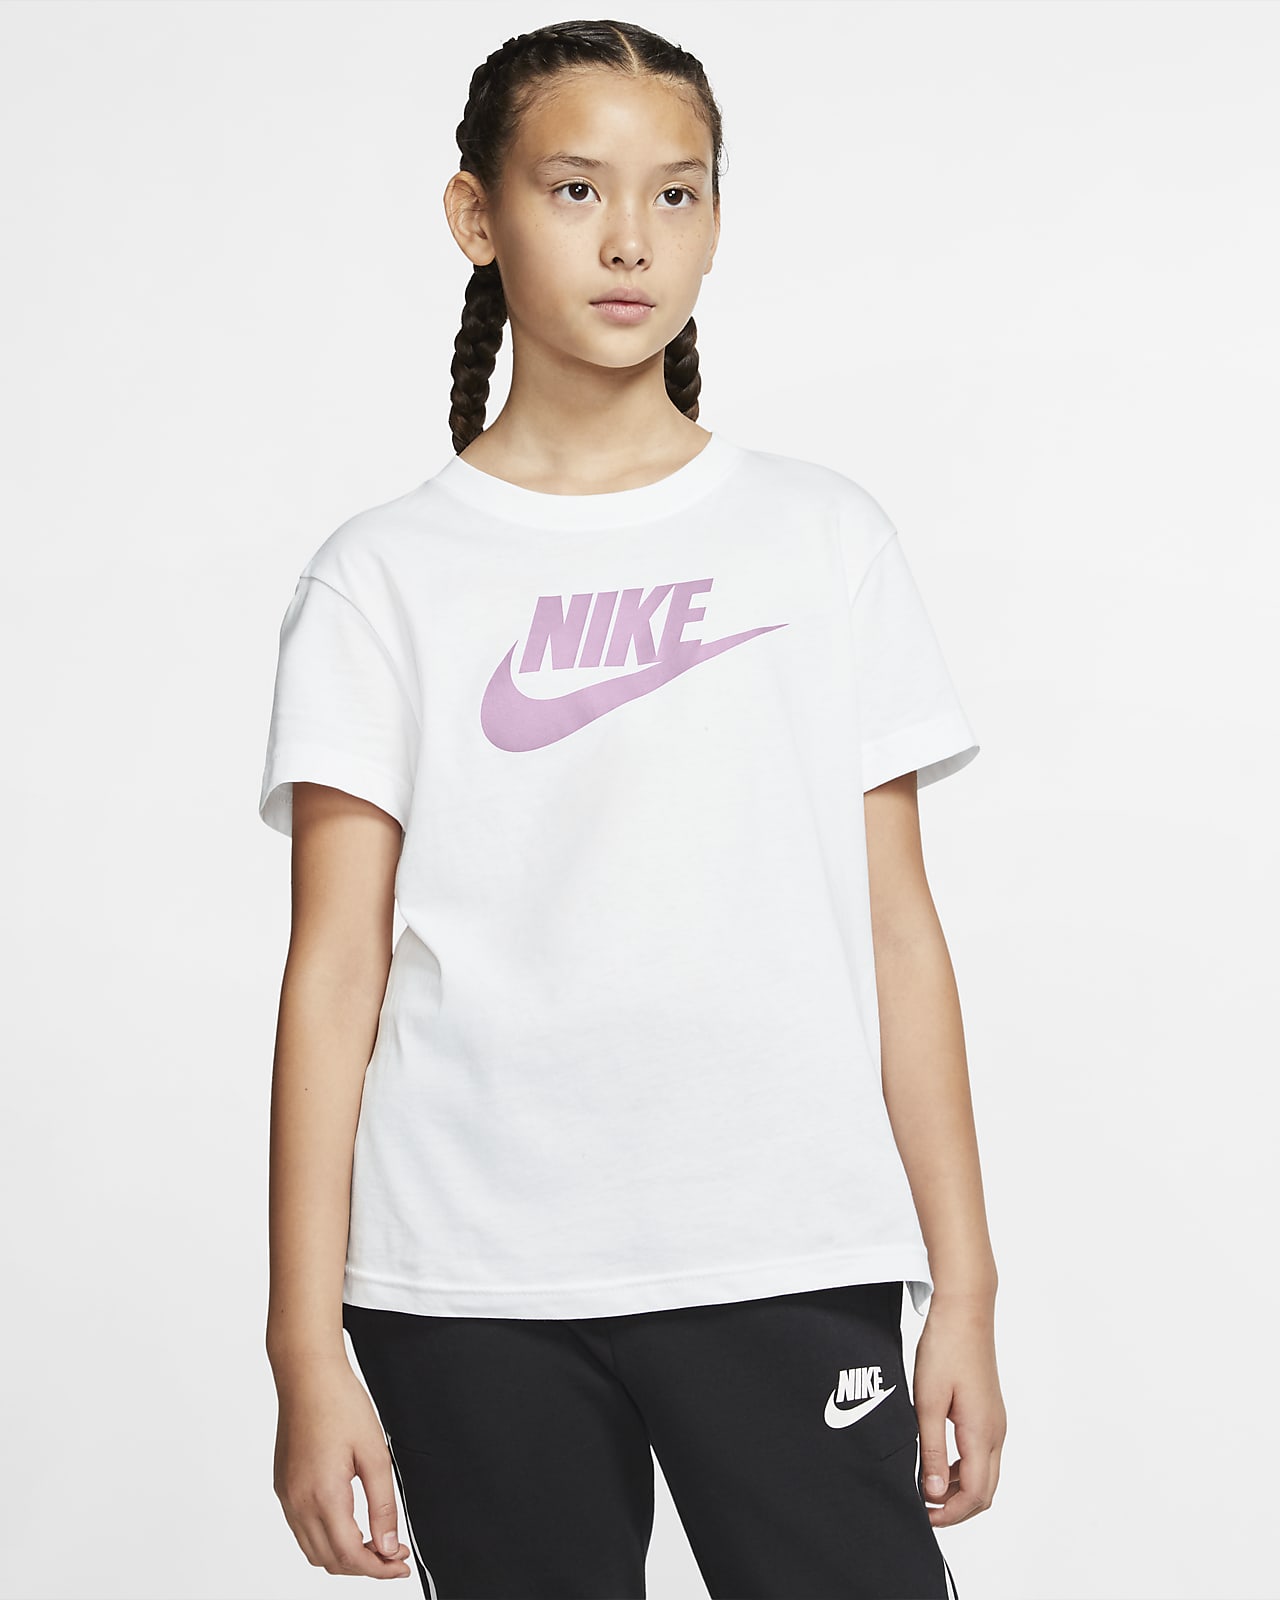 Топ 26. Nike короткие футболки подростковые. Футболки подростковые для занятия спортом розовые.